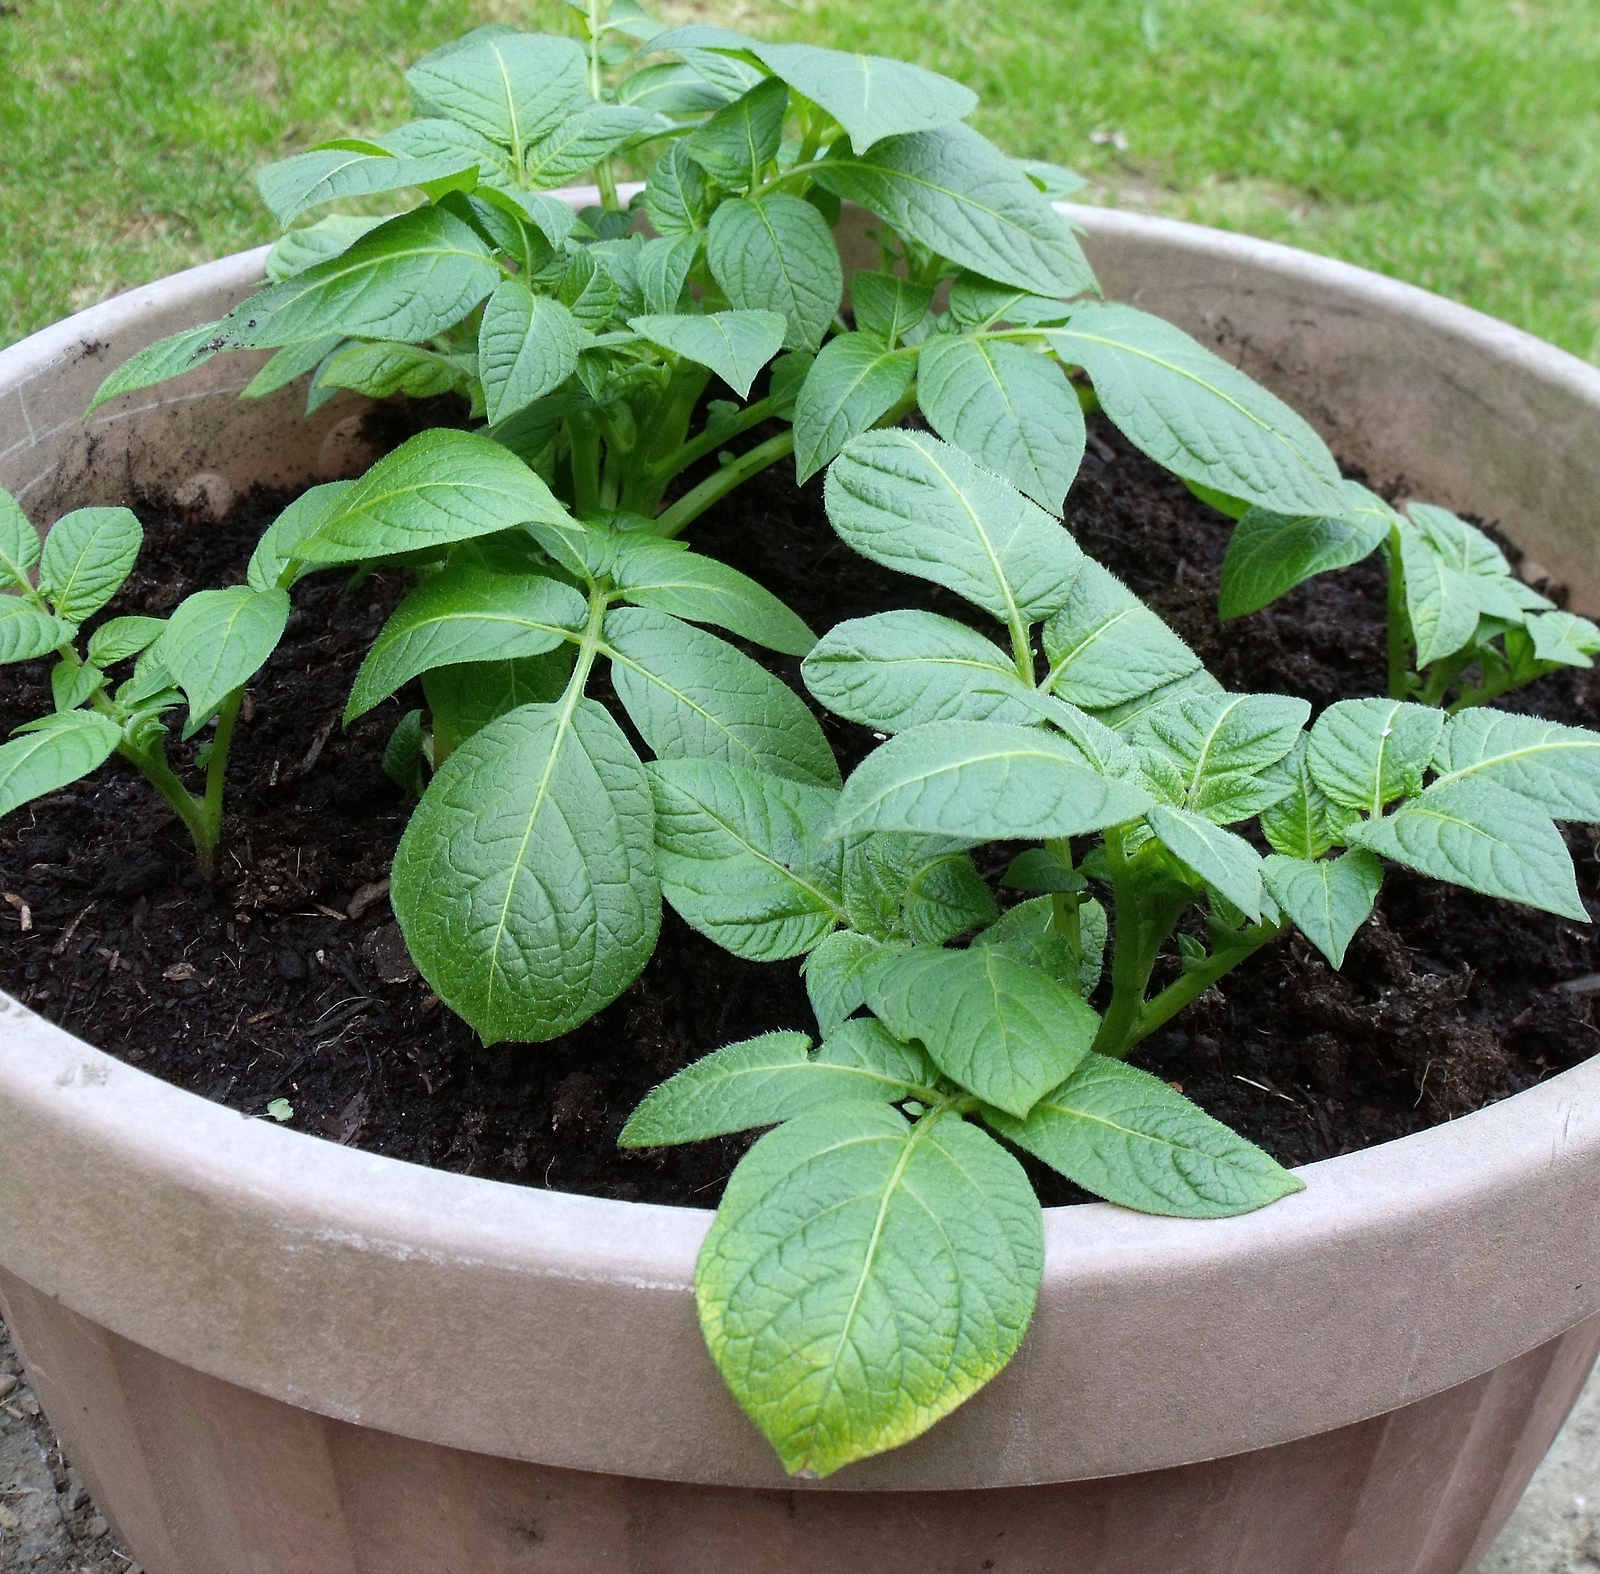 DIY Potato Grow Bag  Growing potatoes, Grow bags, Container gardening